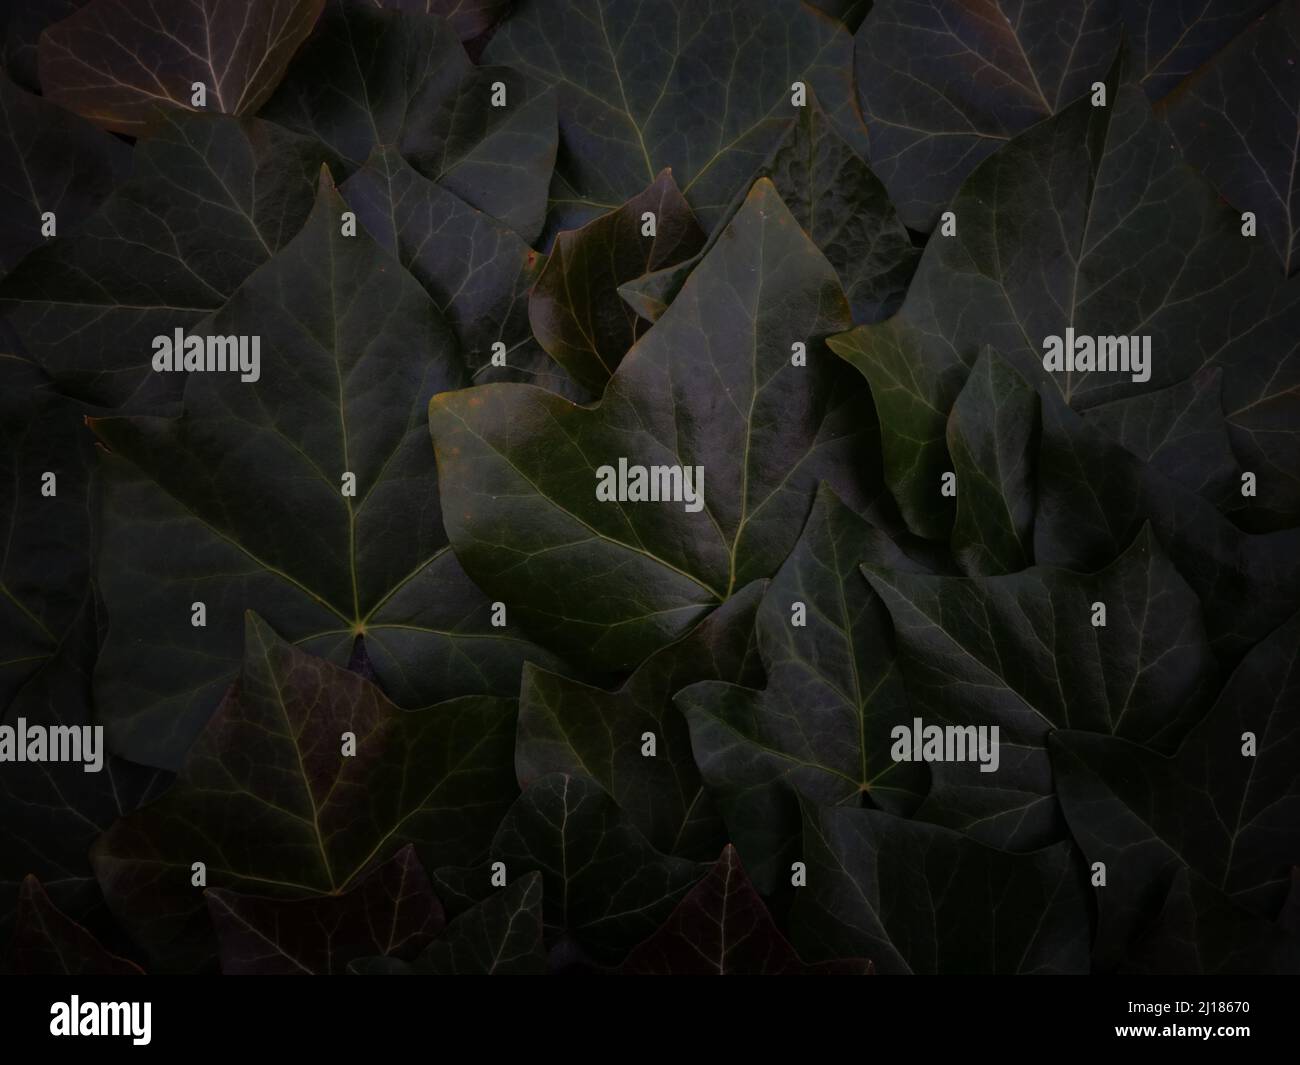 Ruhiger Hintergrund aus schwach beleuchteten dunkelgrünen Efeu-Blättern oder Efeu-Blättern perfekt als Hintergrund oder Vorlage für eine Karte, eine Website oder als heiterer Bildschirmschoner. Stockfoto